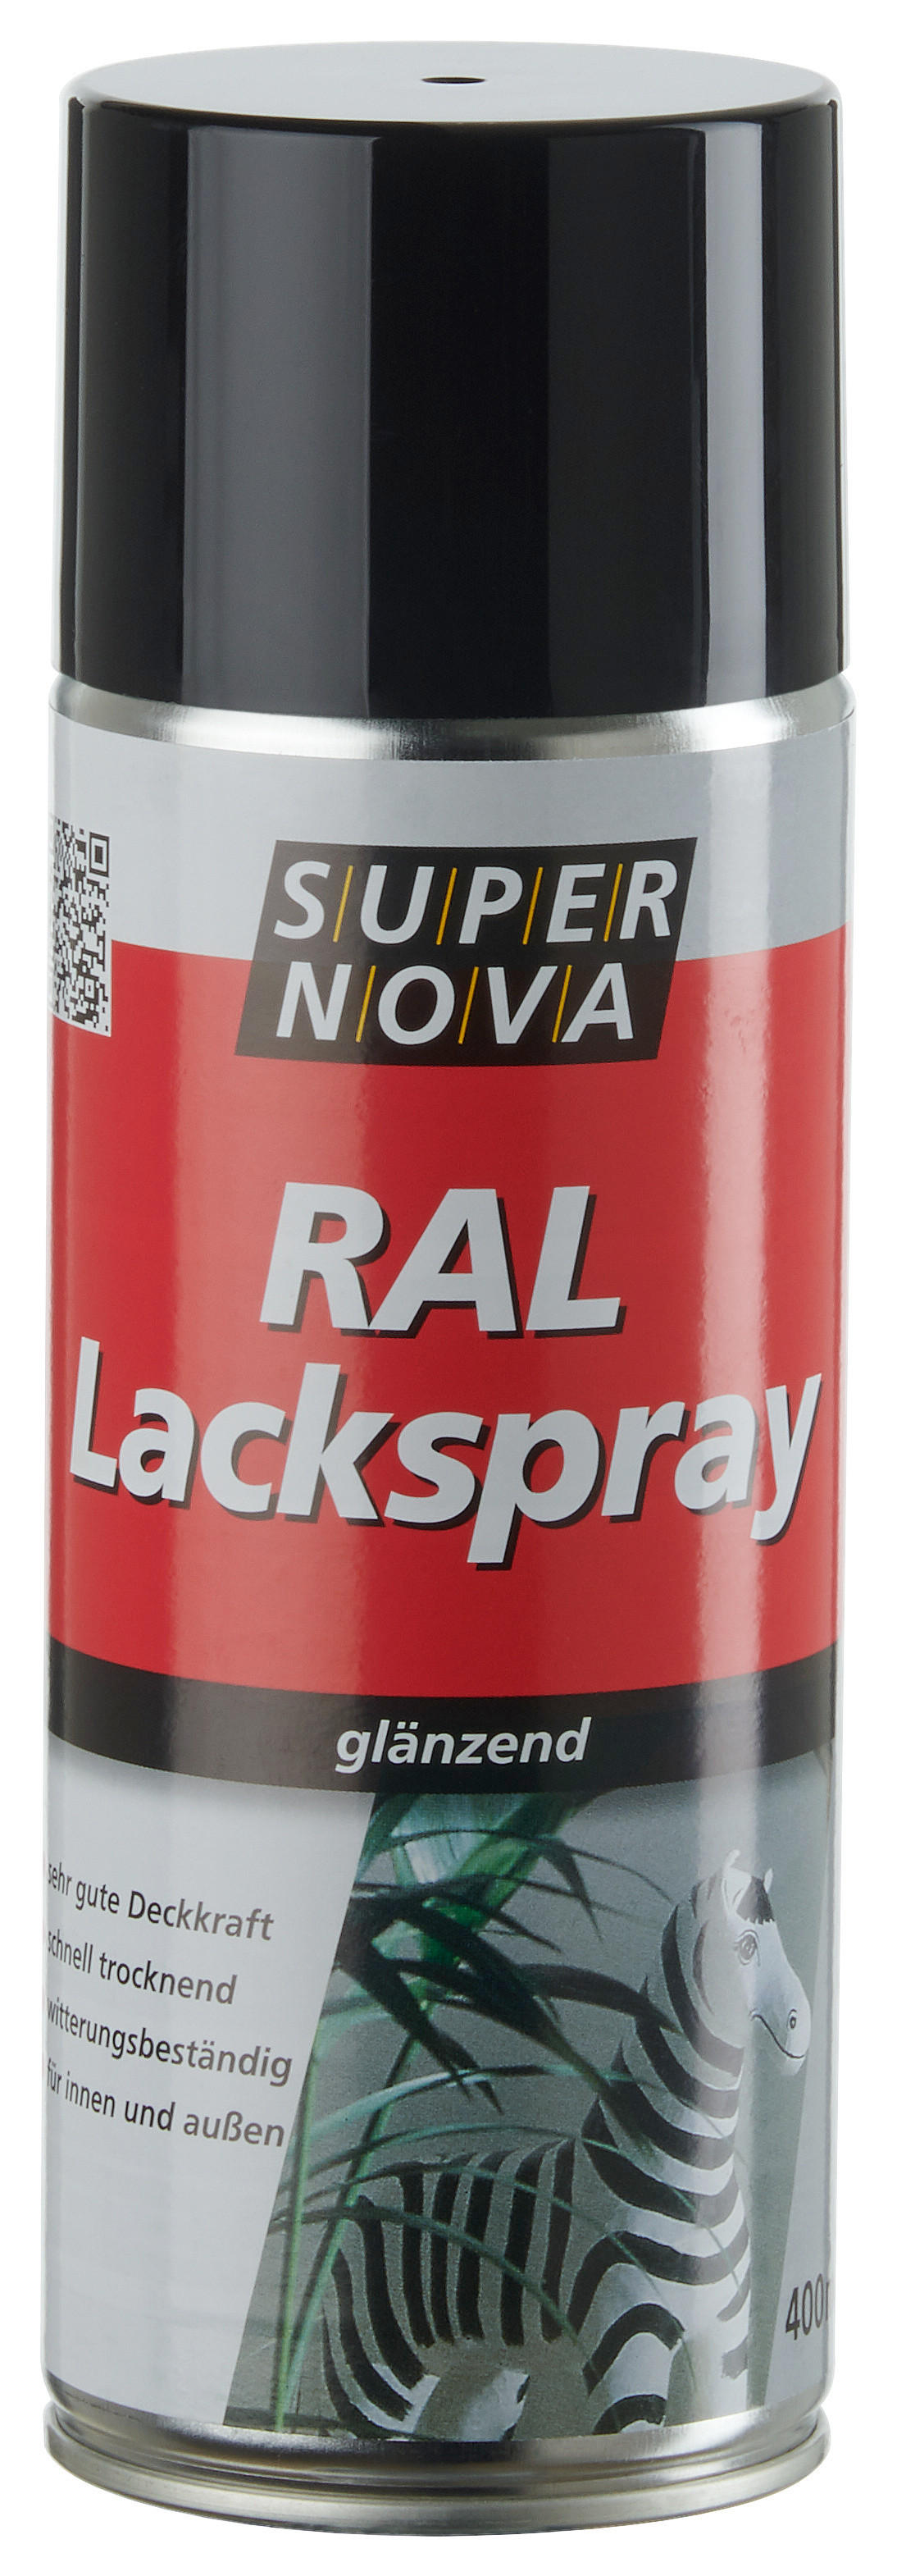 Super-Nova Lackspray tiefschwarz glänzend ca. 0,4 l Lackspray 400ml - tiefschwarz (400ml)